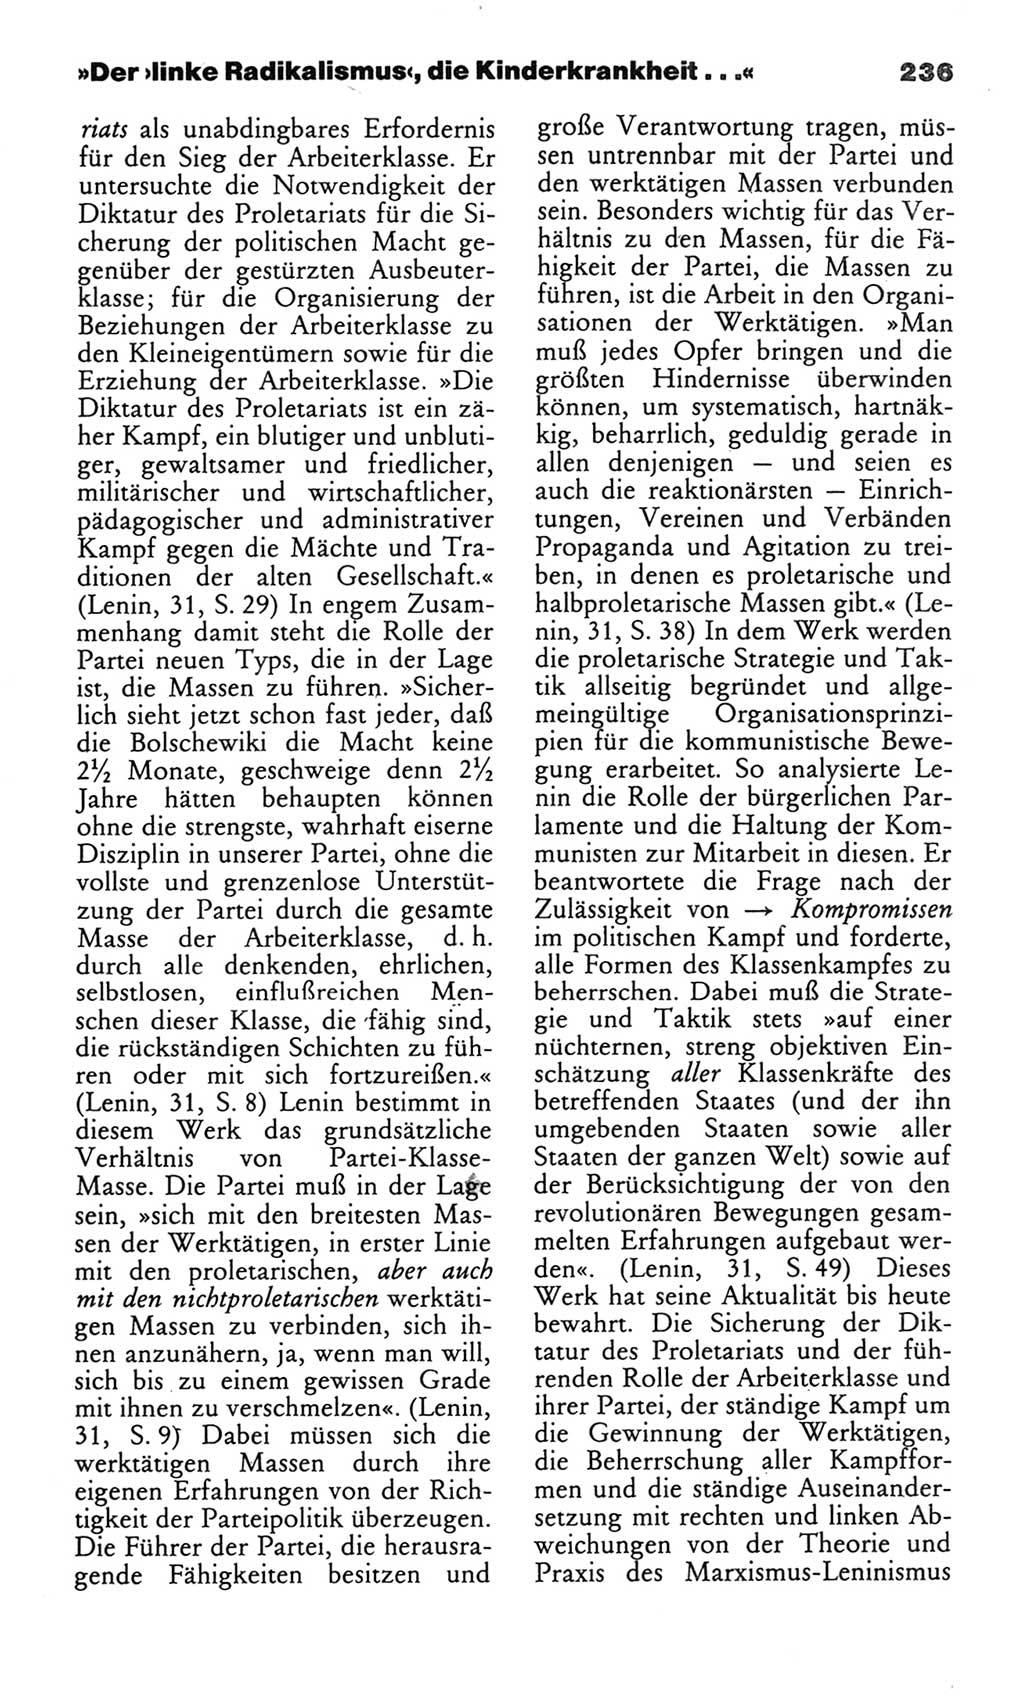 Wörterbuch des wissenschaftlichen Kommunismus [Deutsche Demokratische Republik (DDR)] 1982, Seite 236 (Wb. wiss. Komm. DDR 1982, S. 236)